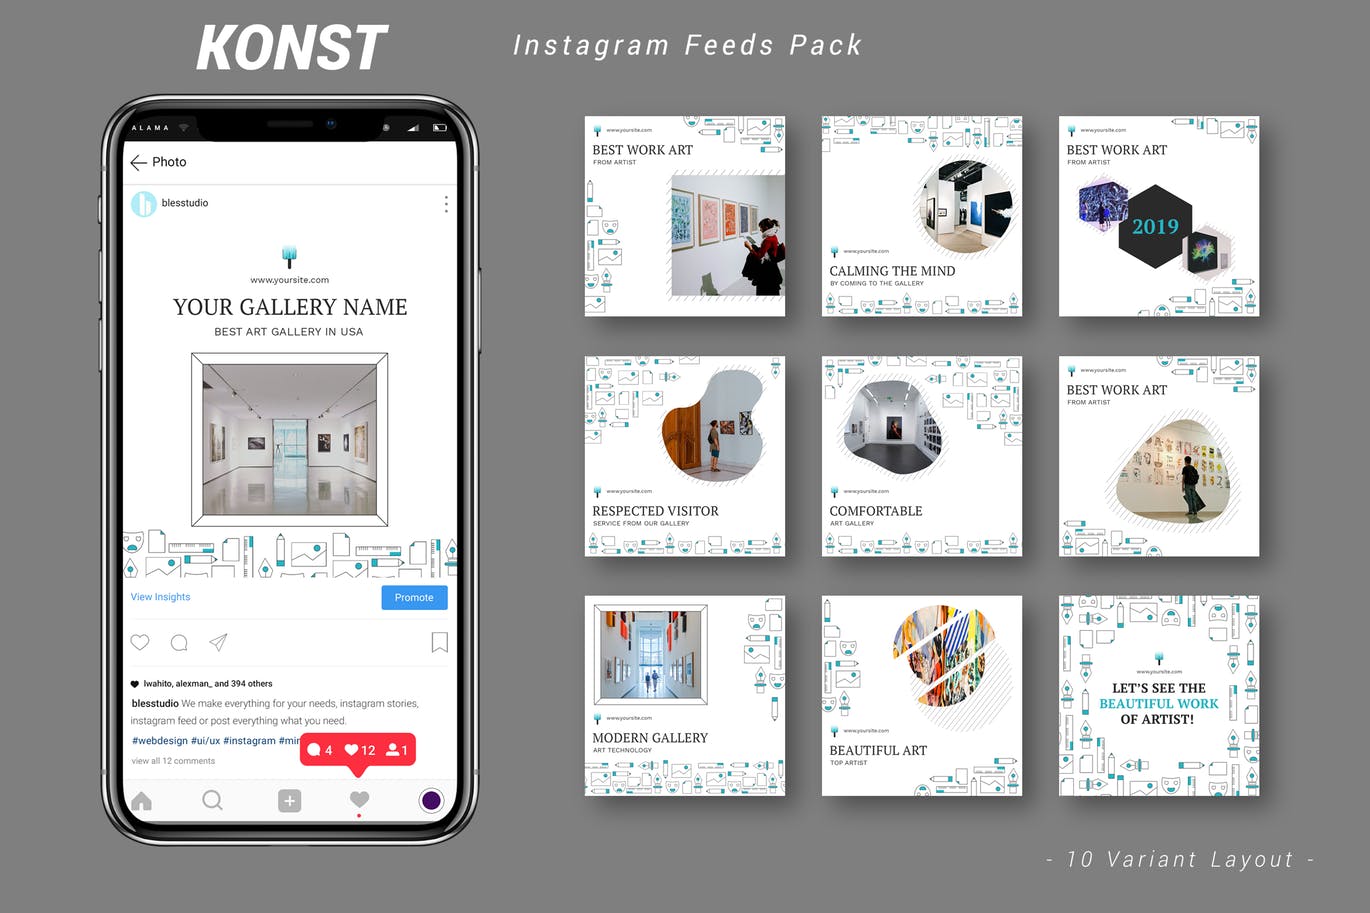 创意艺术展览主题Instagram信息流广告设计模板第一素材精选 Konst – Instagram Feeds Pack插图